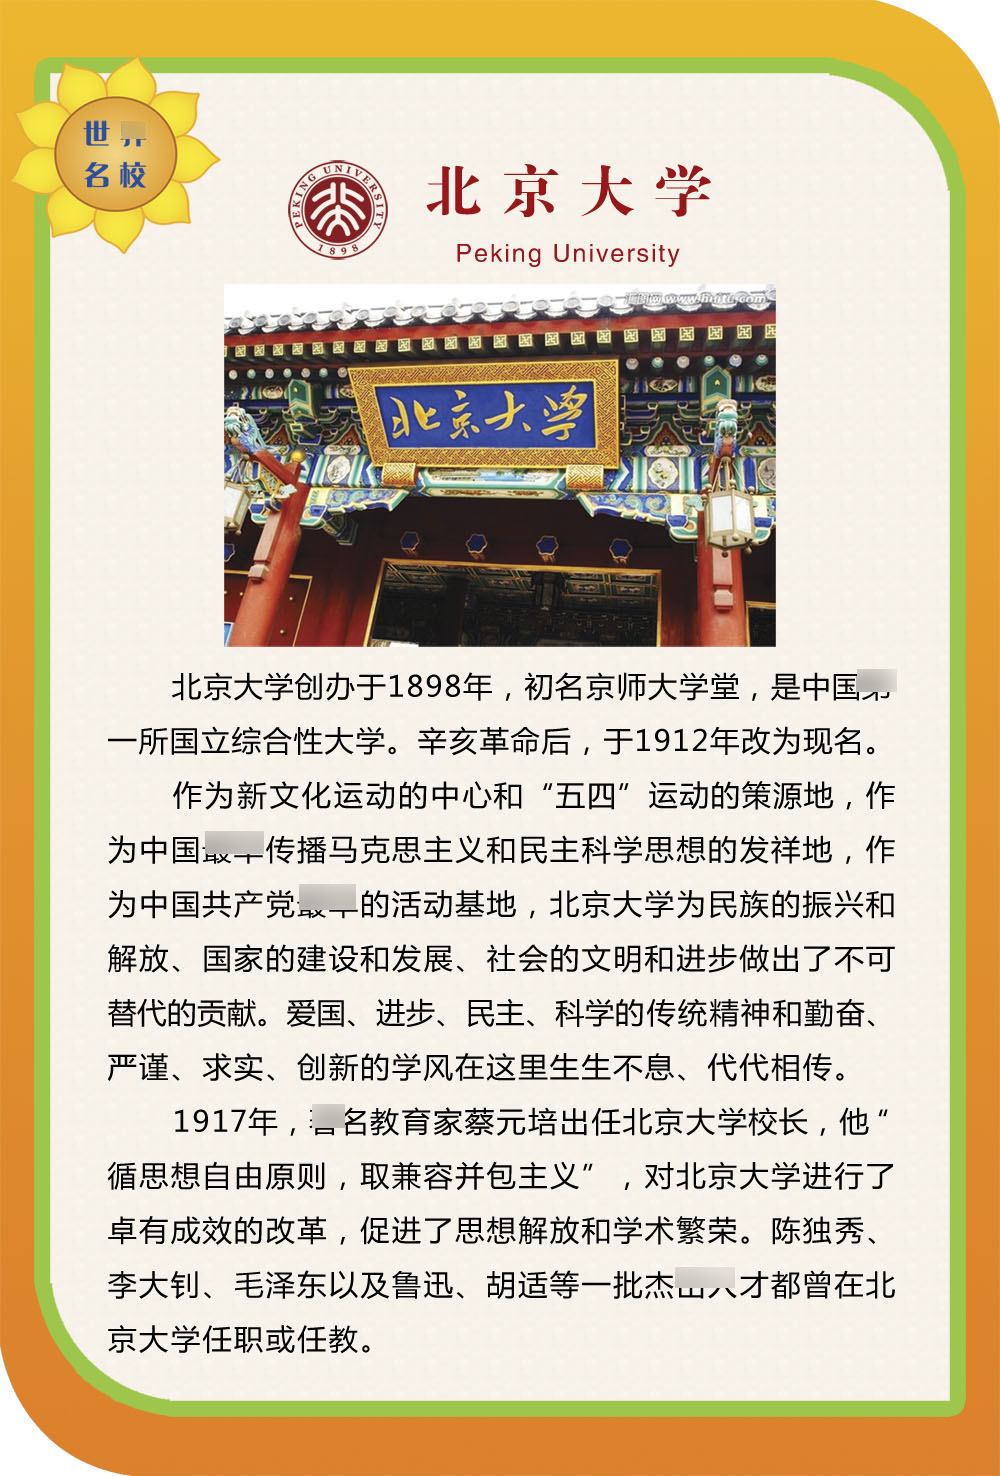 762海报印制展板写真素材646学校园名学校简介绍图片北京大学